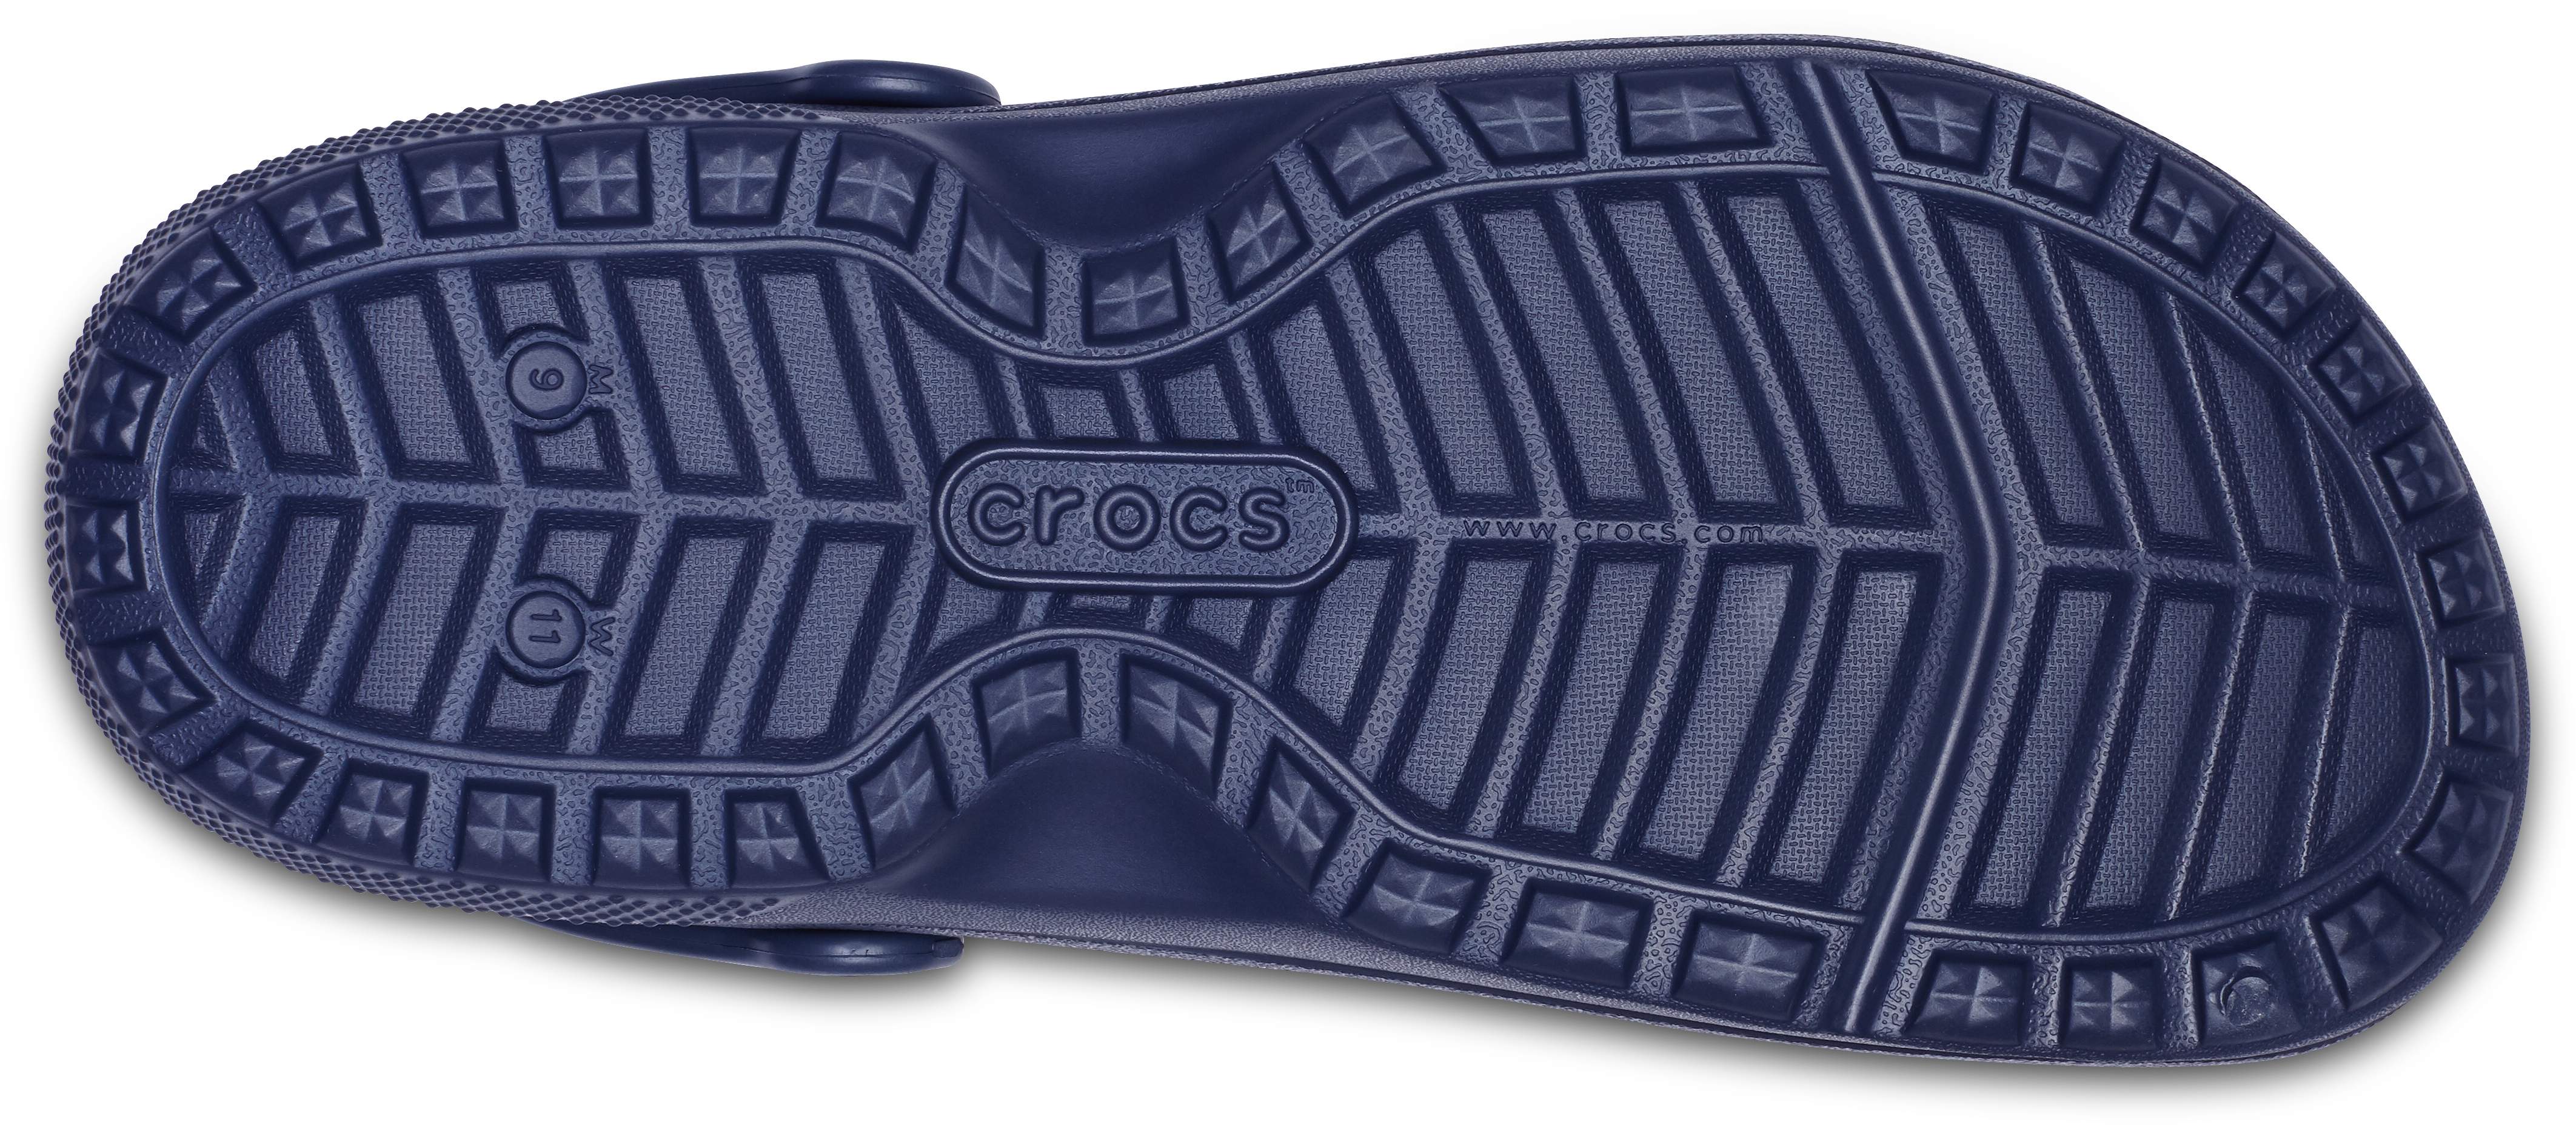 crocs hospitality shoes